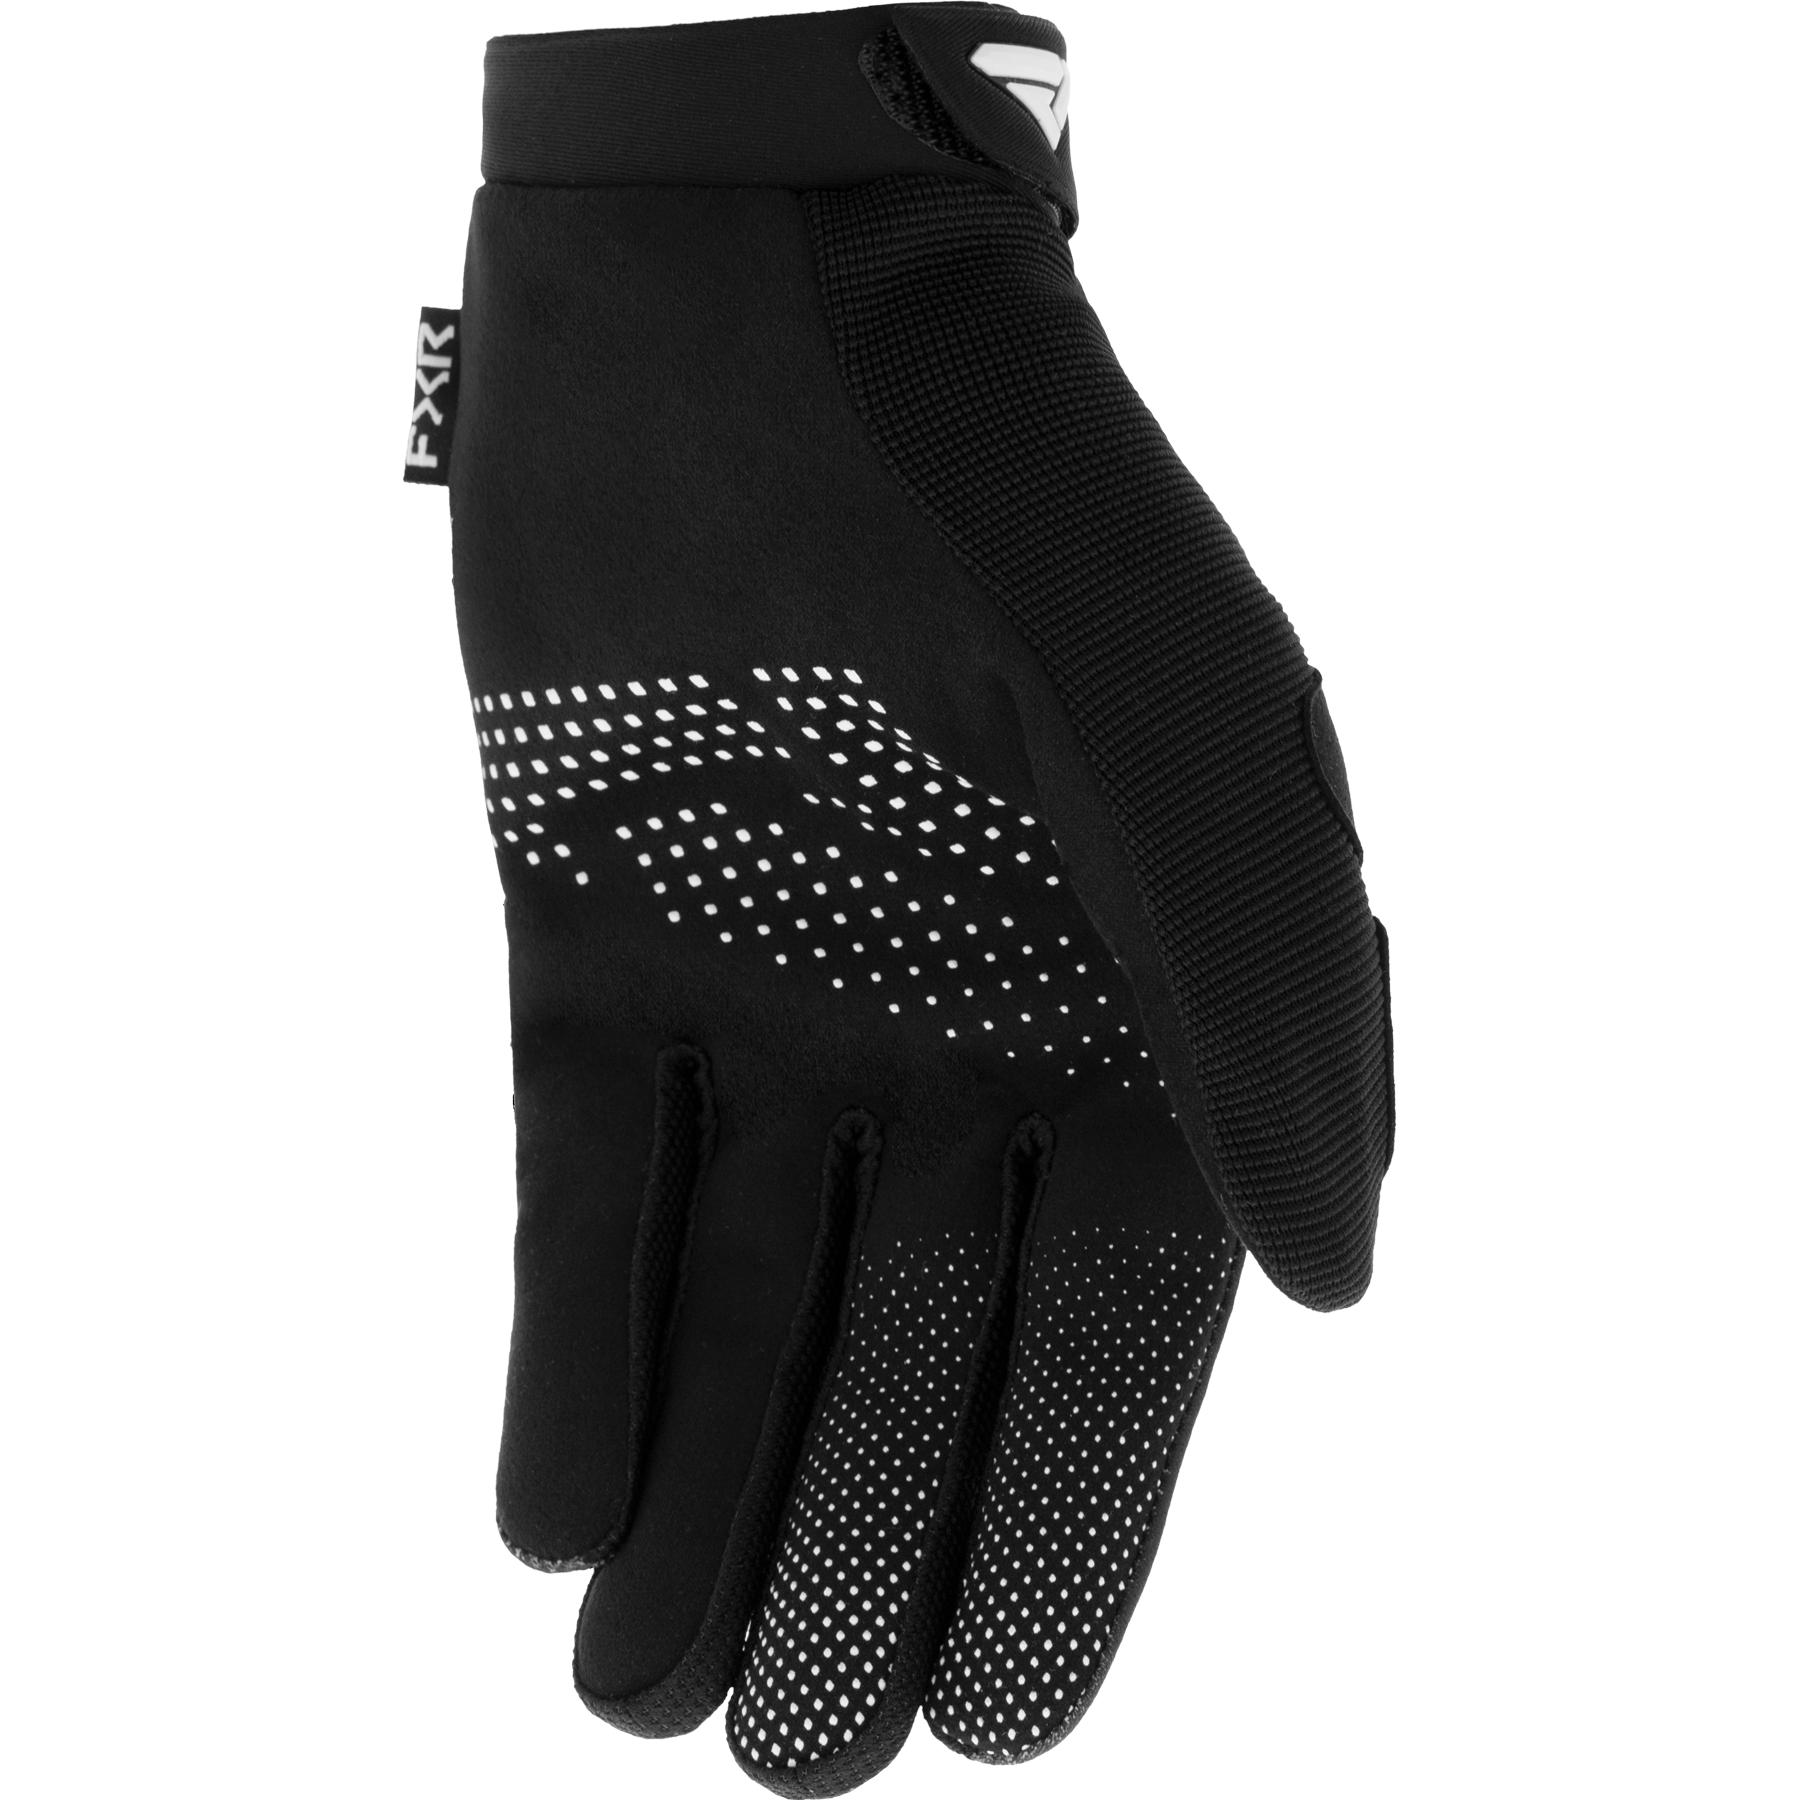 FXR Reflex KIDS MX Glove Black/White